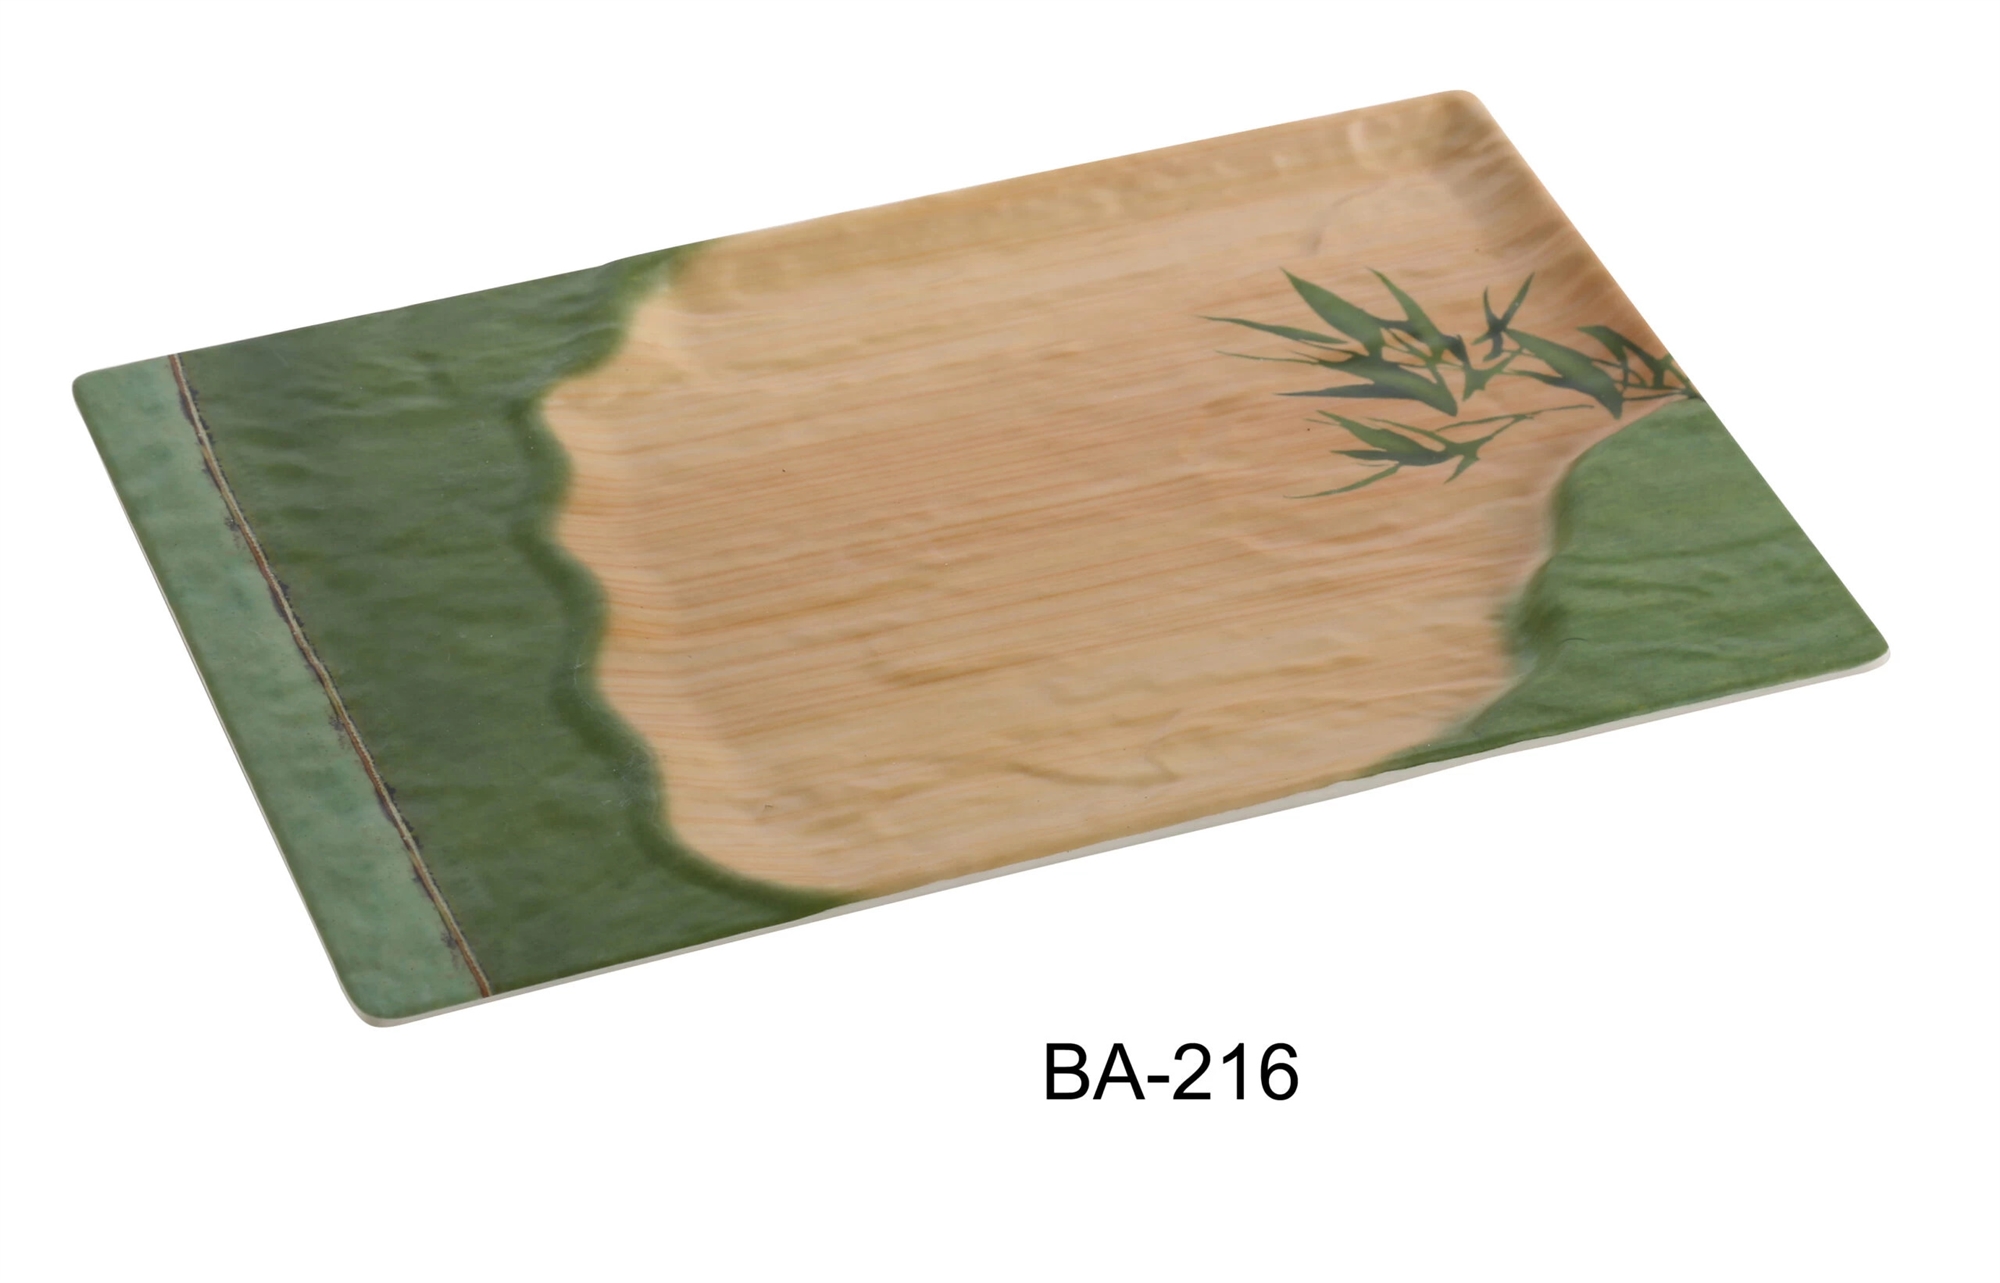 Yanco BA-216 Bamboo Style 16" X 10" Rectangular Plate